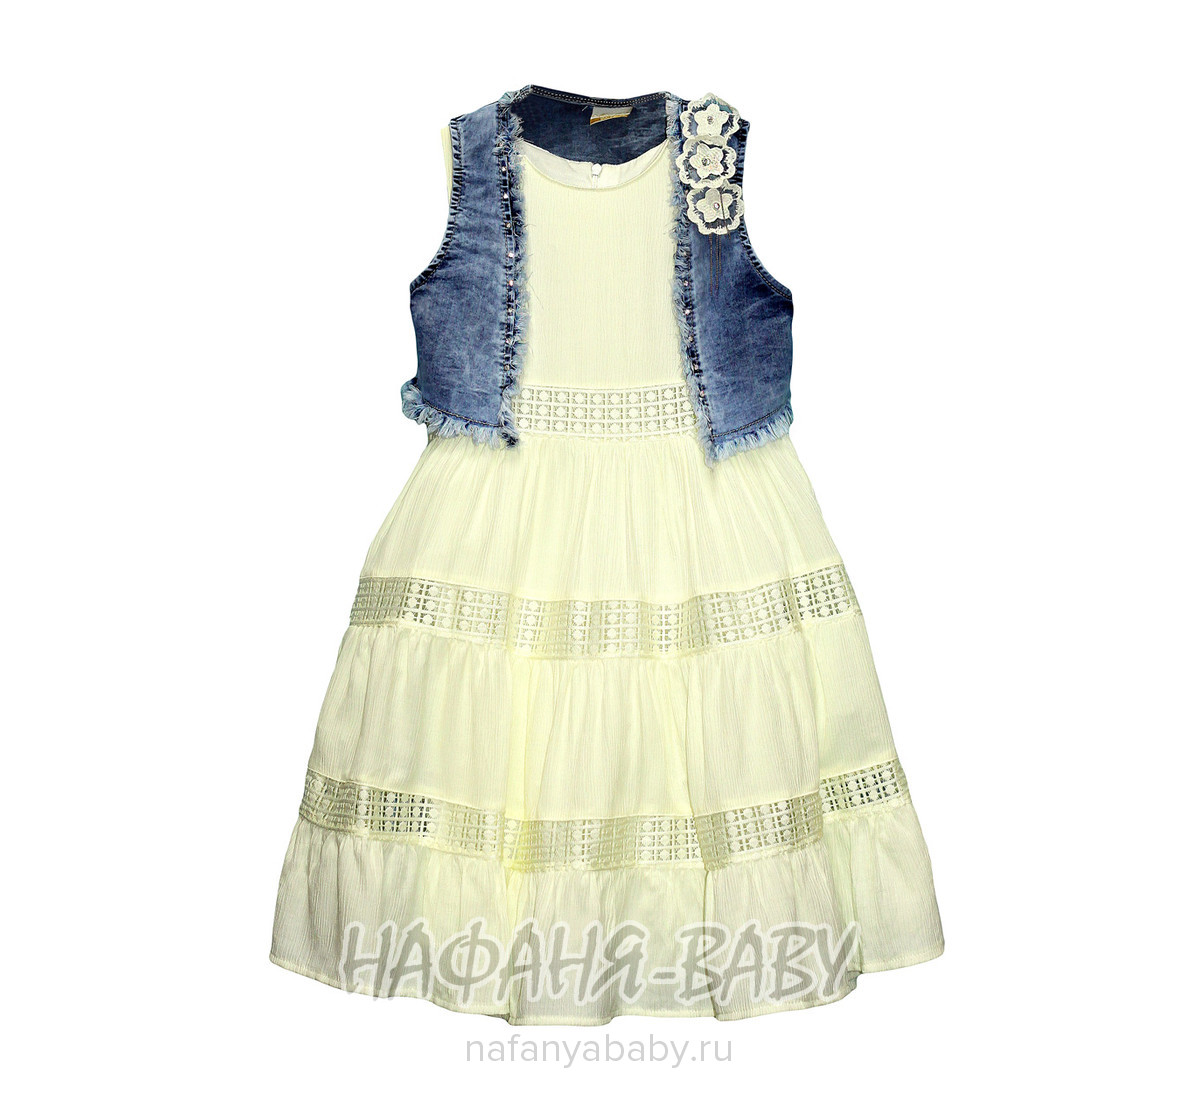 Комплект (платье+джинсовое болеро) MOONSTAR, купить в интернет магазине Нафаня. арт: 7833.